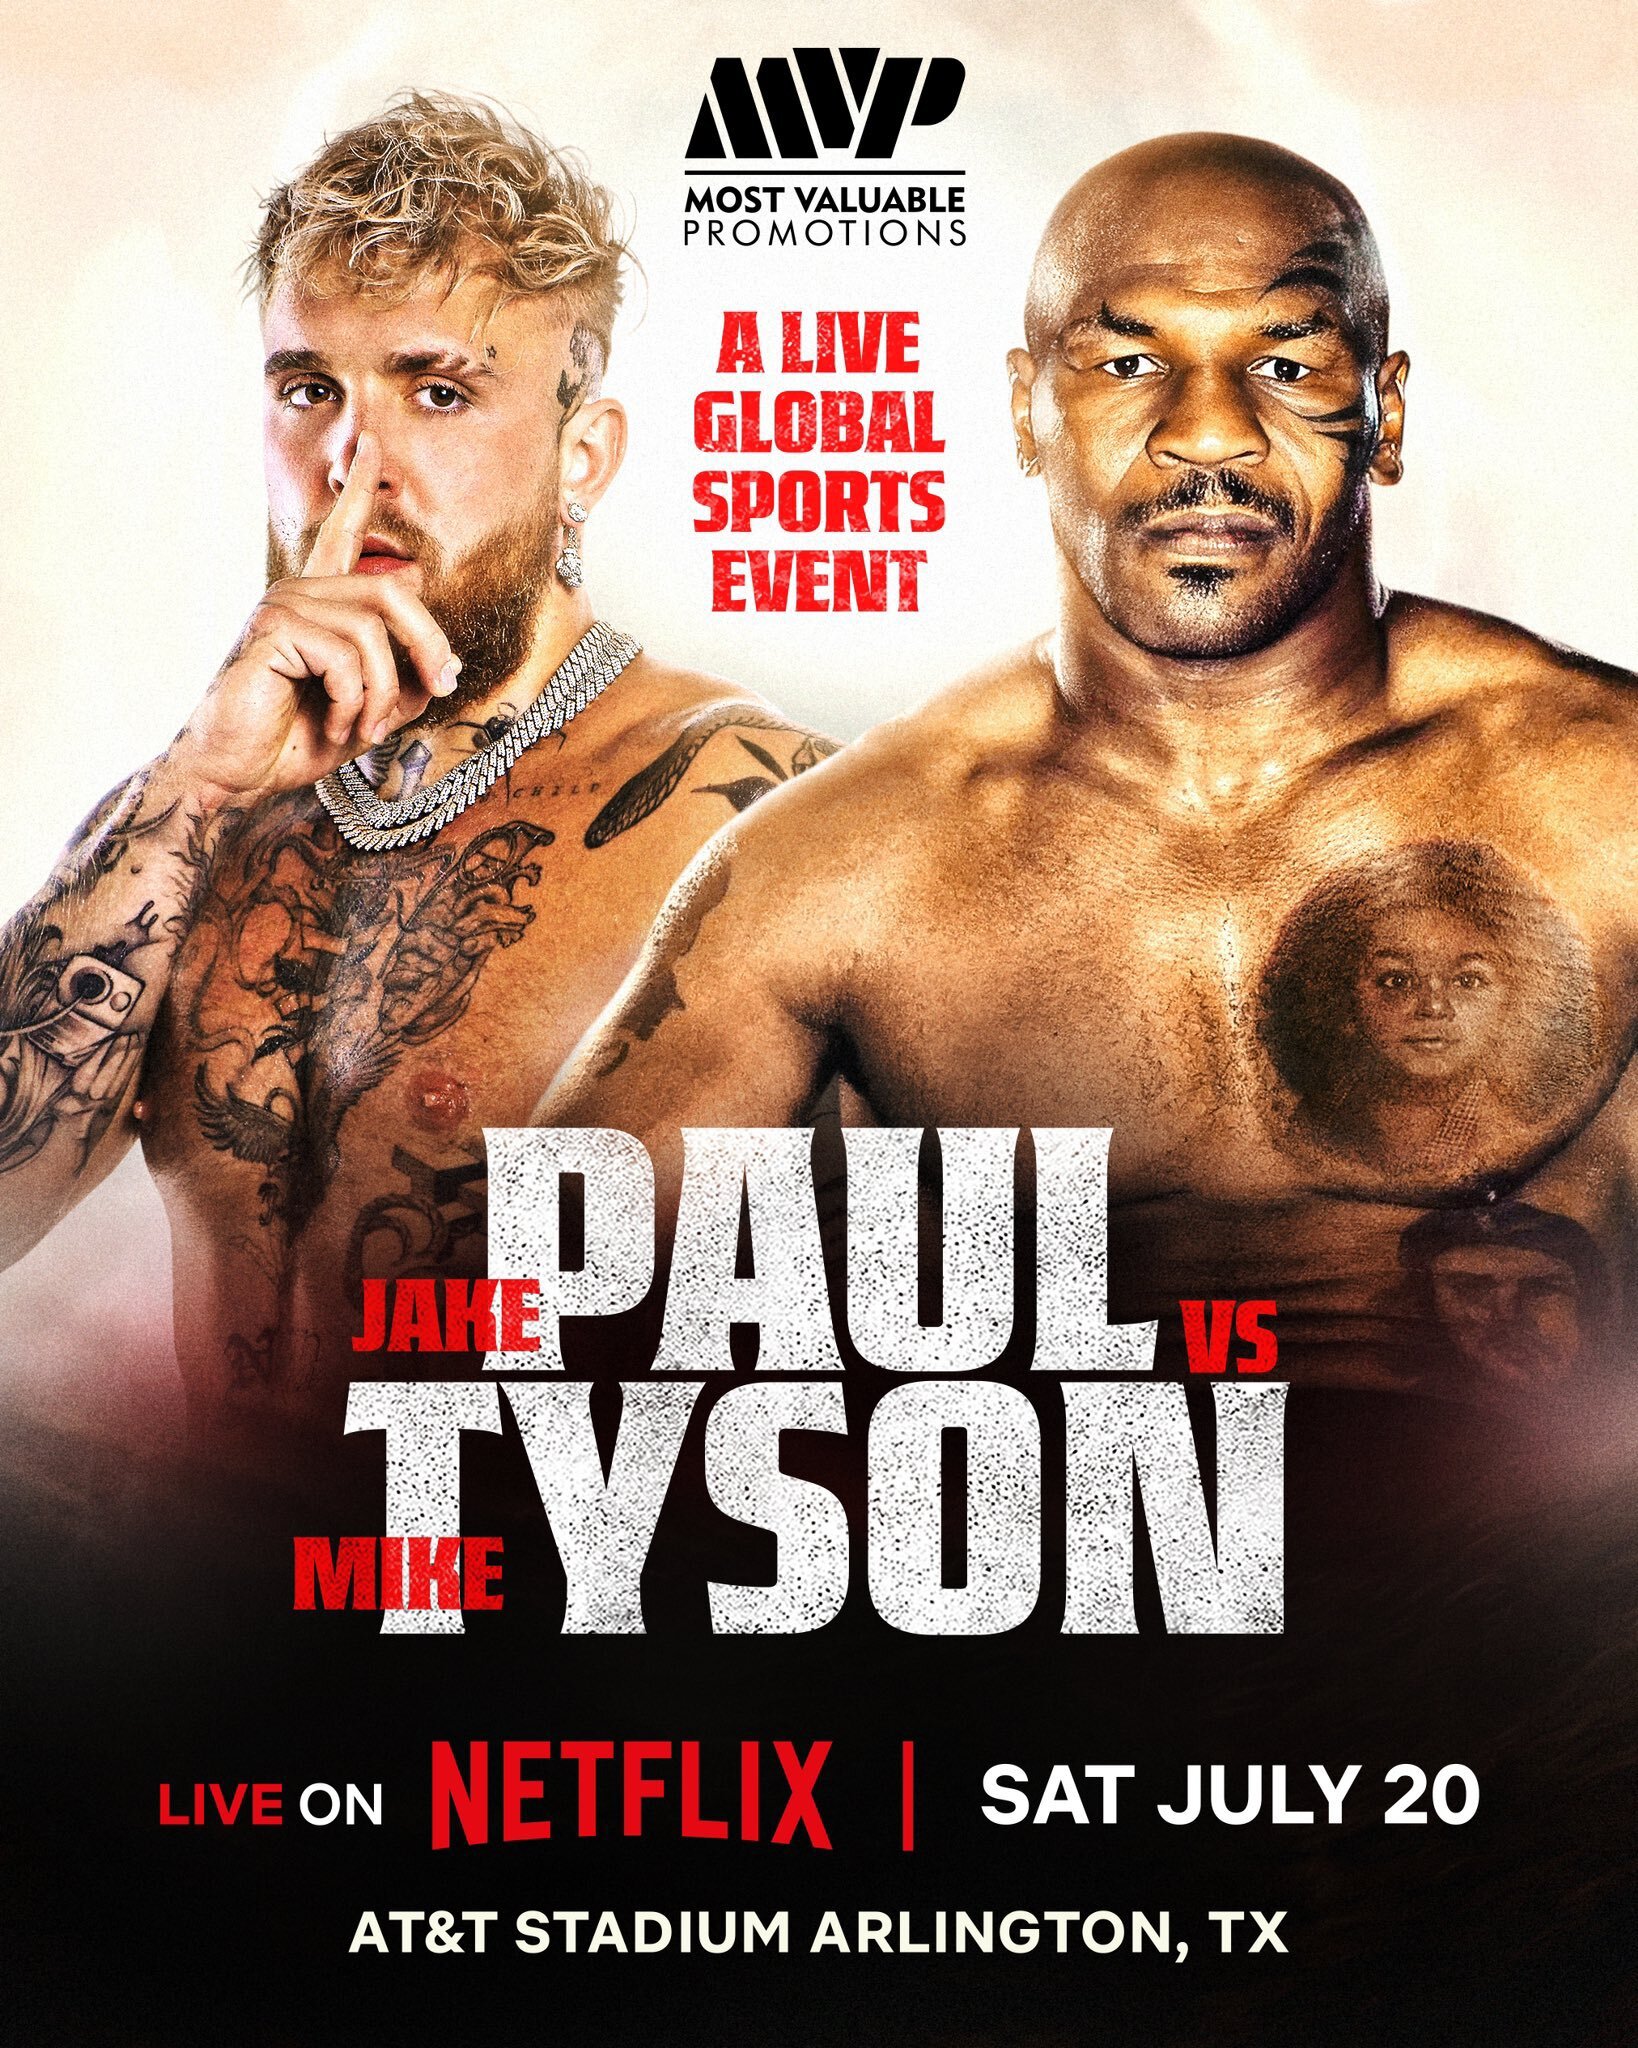 Jake Paul To Fight Mike Tyson On Netflix, July 20 Boxing News